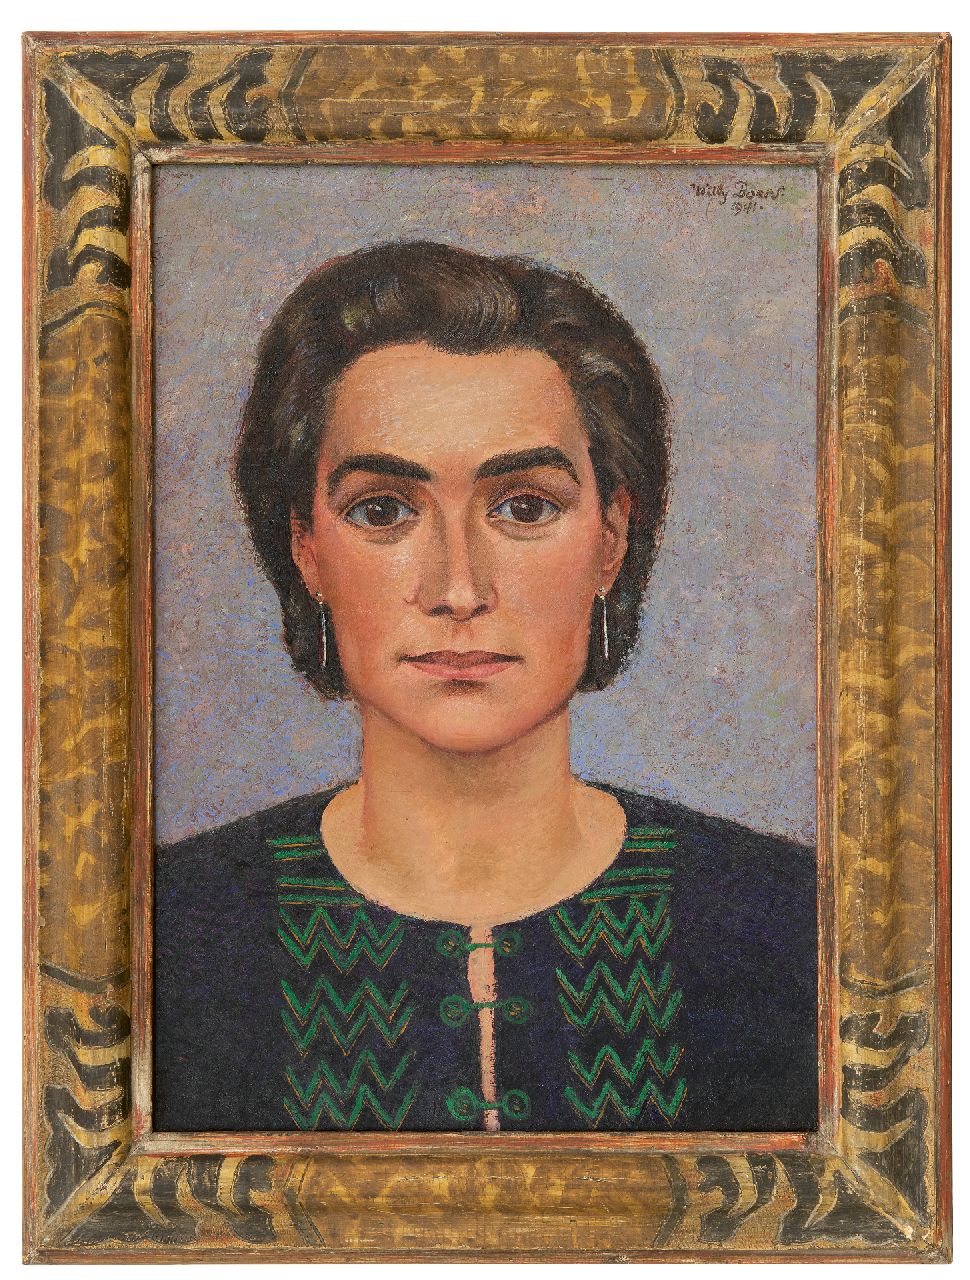 Boers W.H.F.  | 'Willy' Herman Friederich Boers | Schilderijen te koop aangeboden | Portret van Frieda Hunziker, olieverf op doek 50,6 x 35,4 cm, gesigneerd rechtsboven en gedateerd 1941